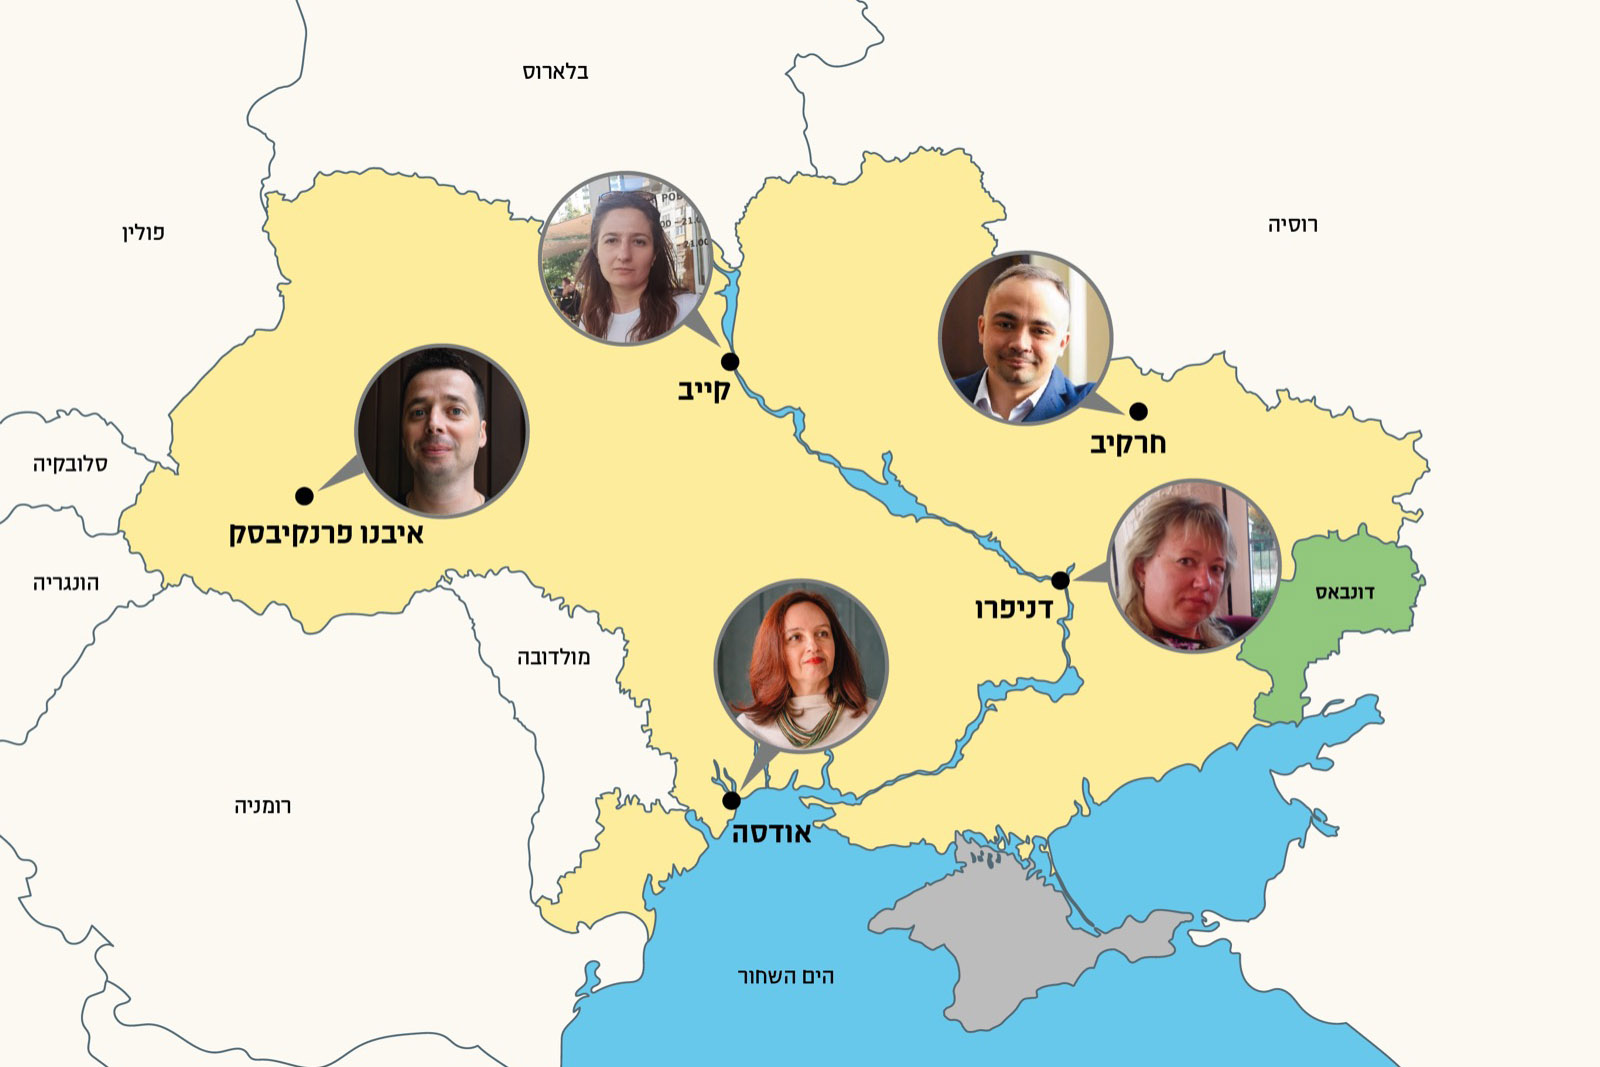 אוקראינה ממזרח למערב: למלחמה פנים רבות (צילומים: אלבומים פרטיים; עיצוב: אידאה)